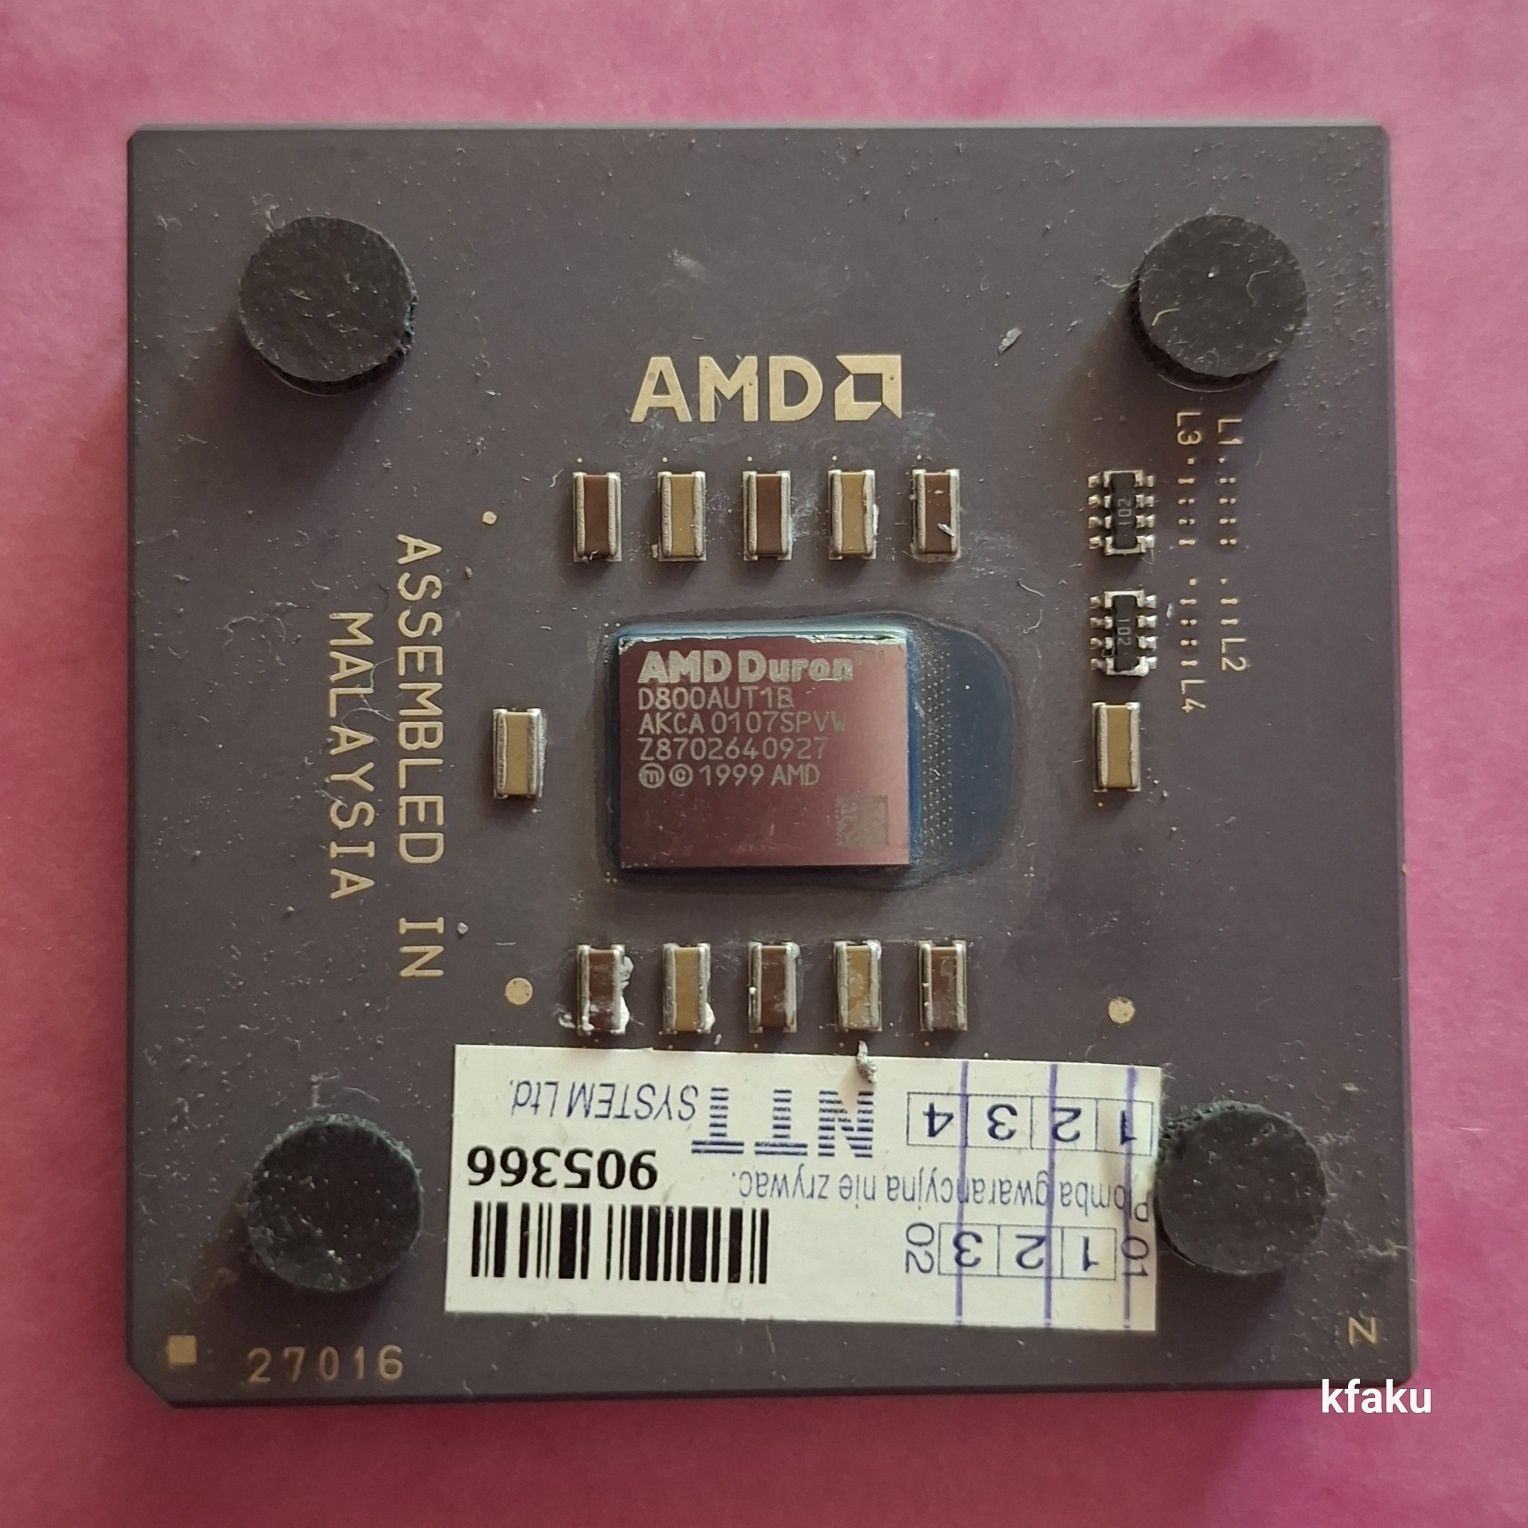 Procesor AMD Duron D800AUT1B socket 462